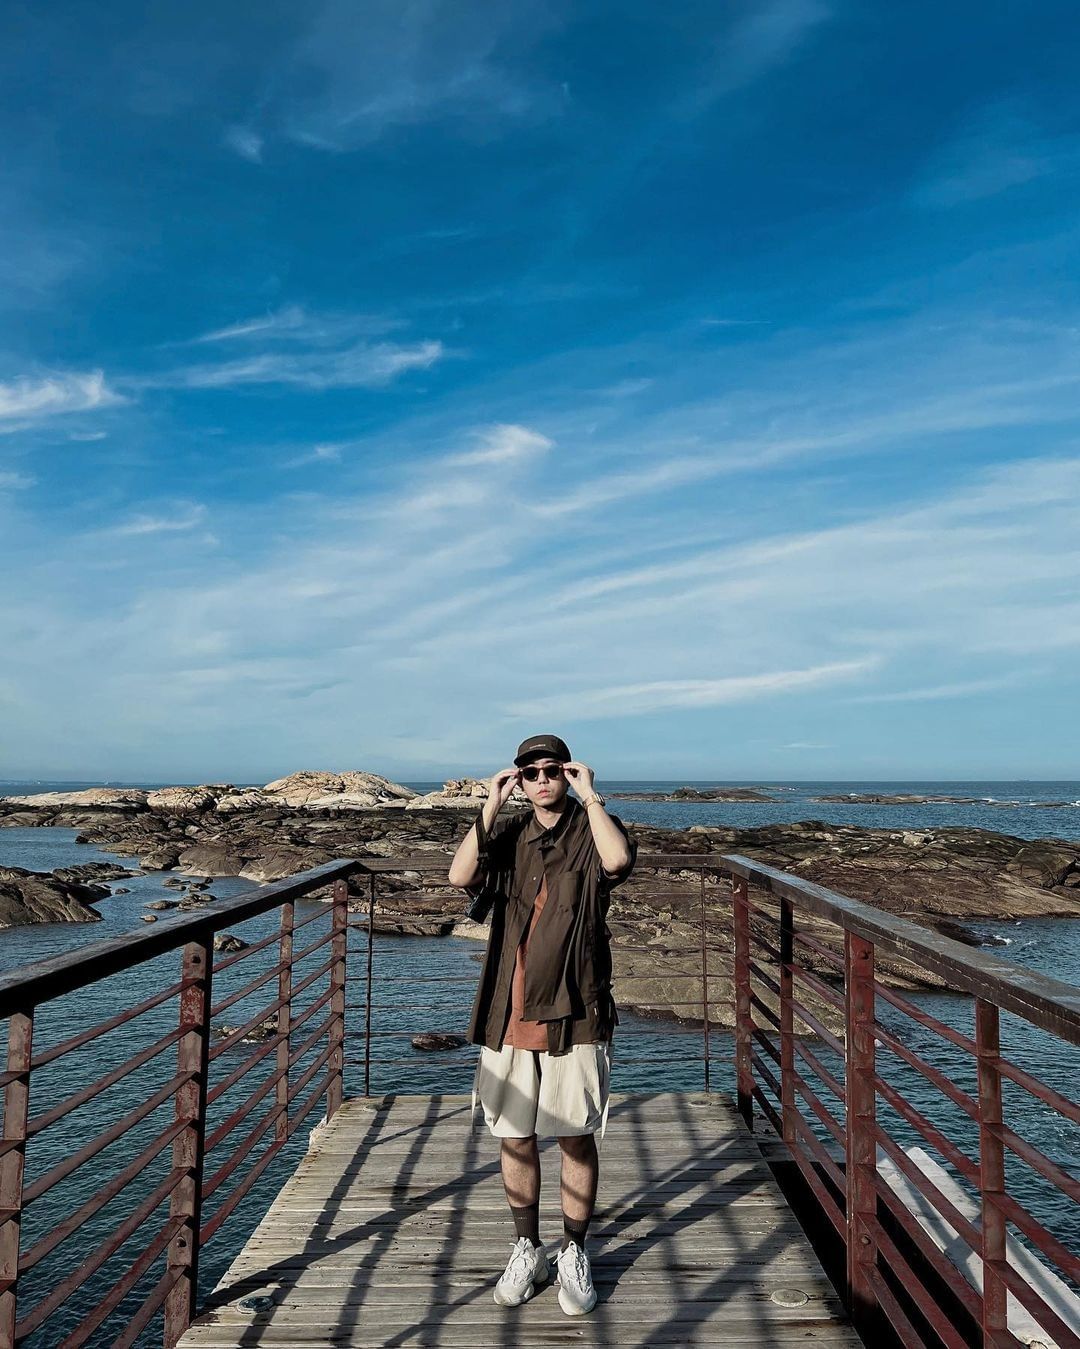 復國墩觀景台
位於金門最東端的復國墩漁港，是金門觀賞日出的景點首選。這裡最吸引人的是觀海步道的設計，漫步在步道上，可欣賞遼闊海景、...